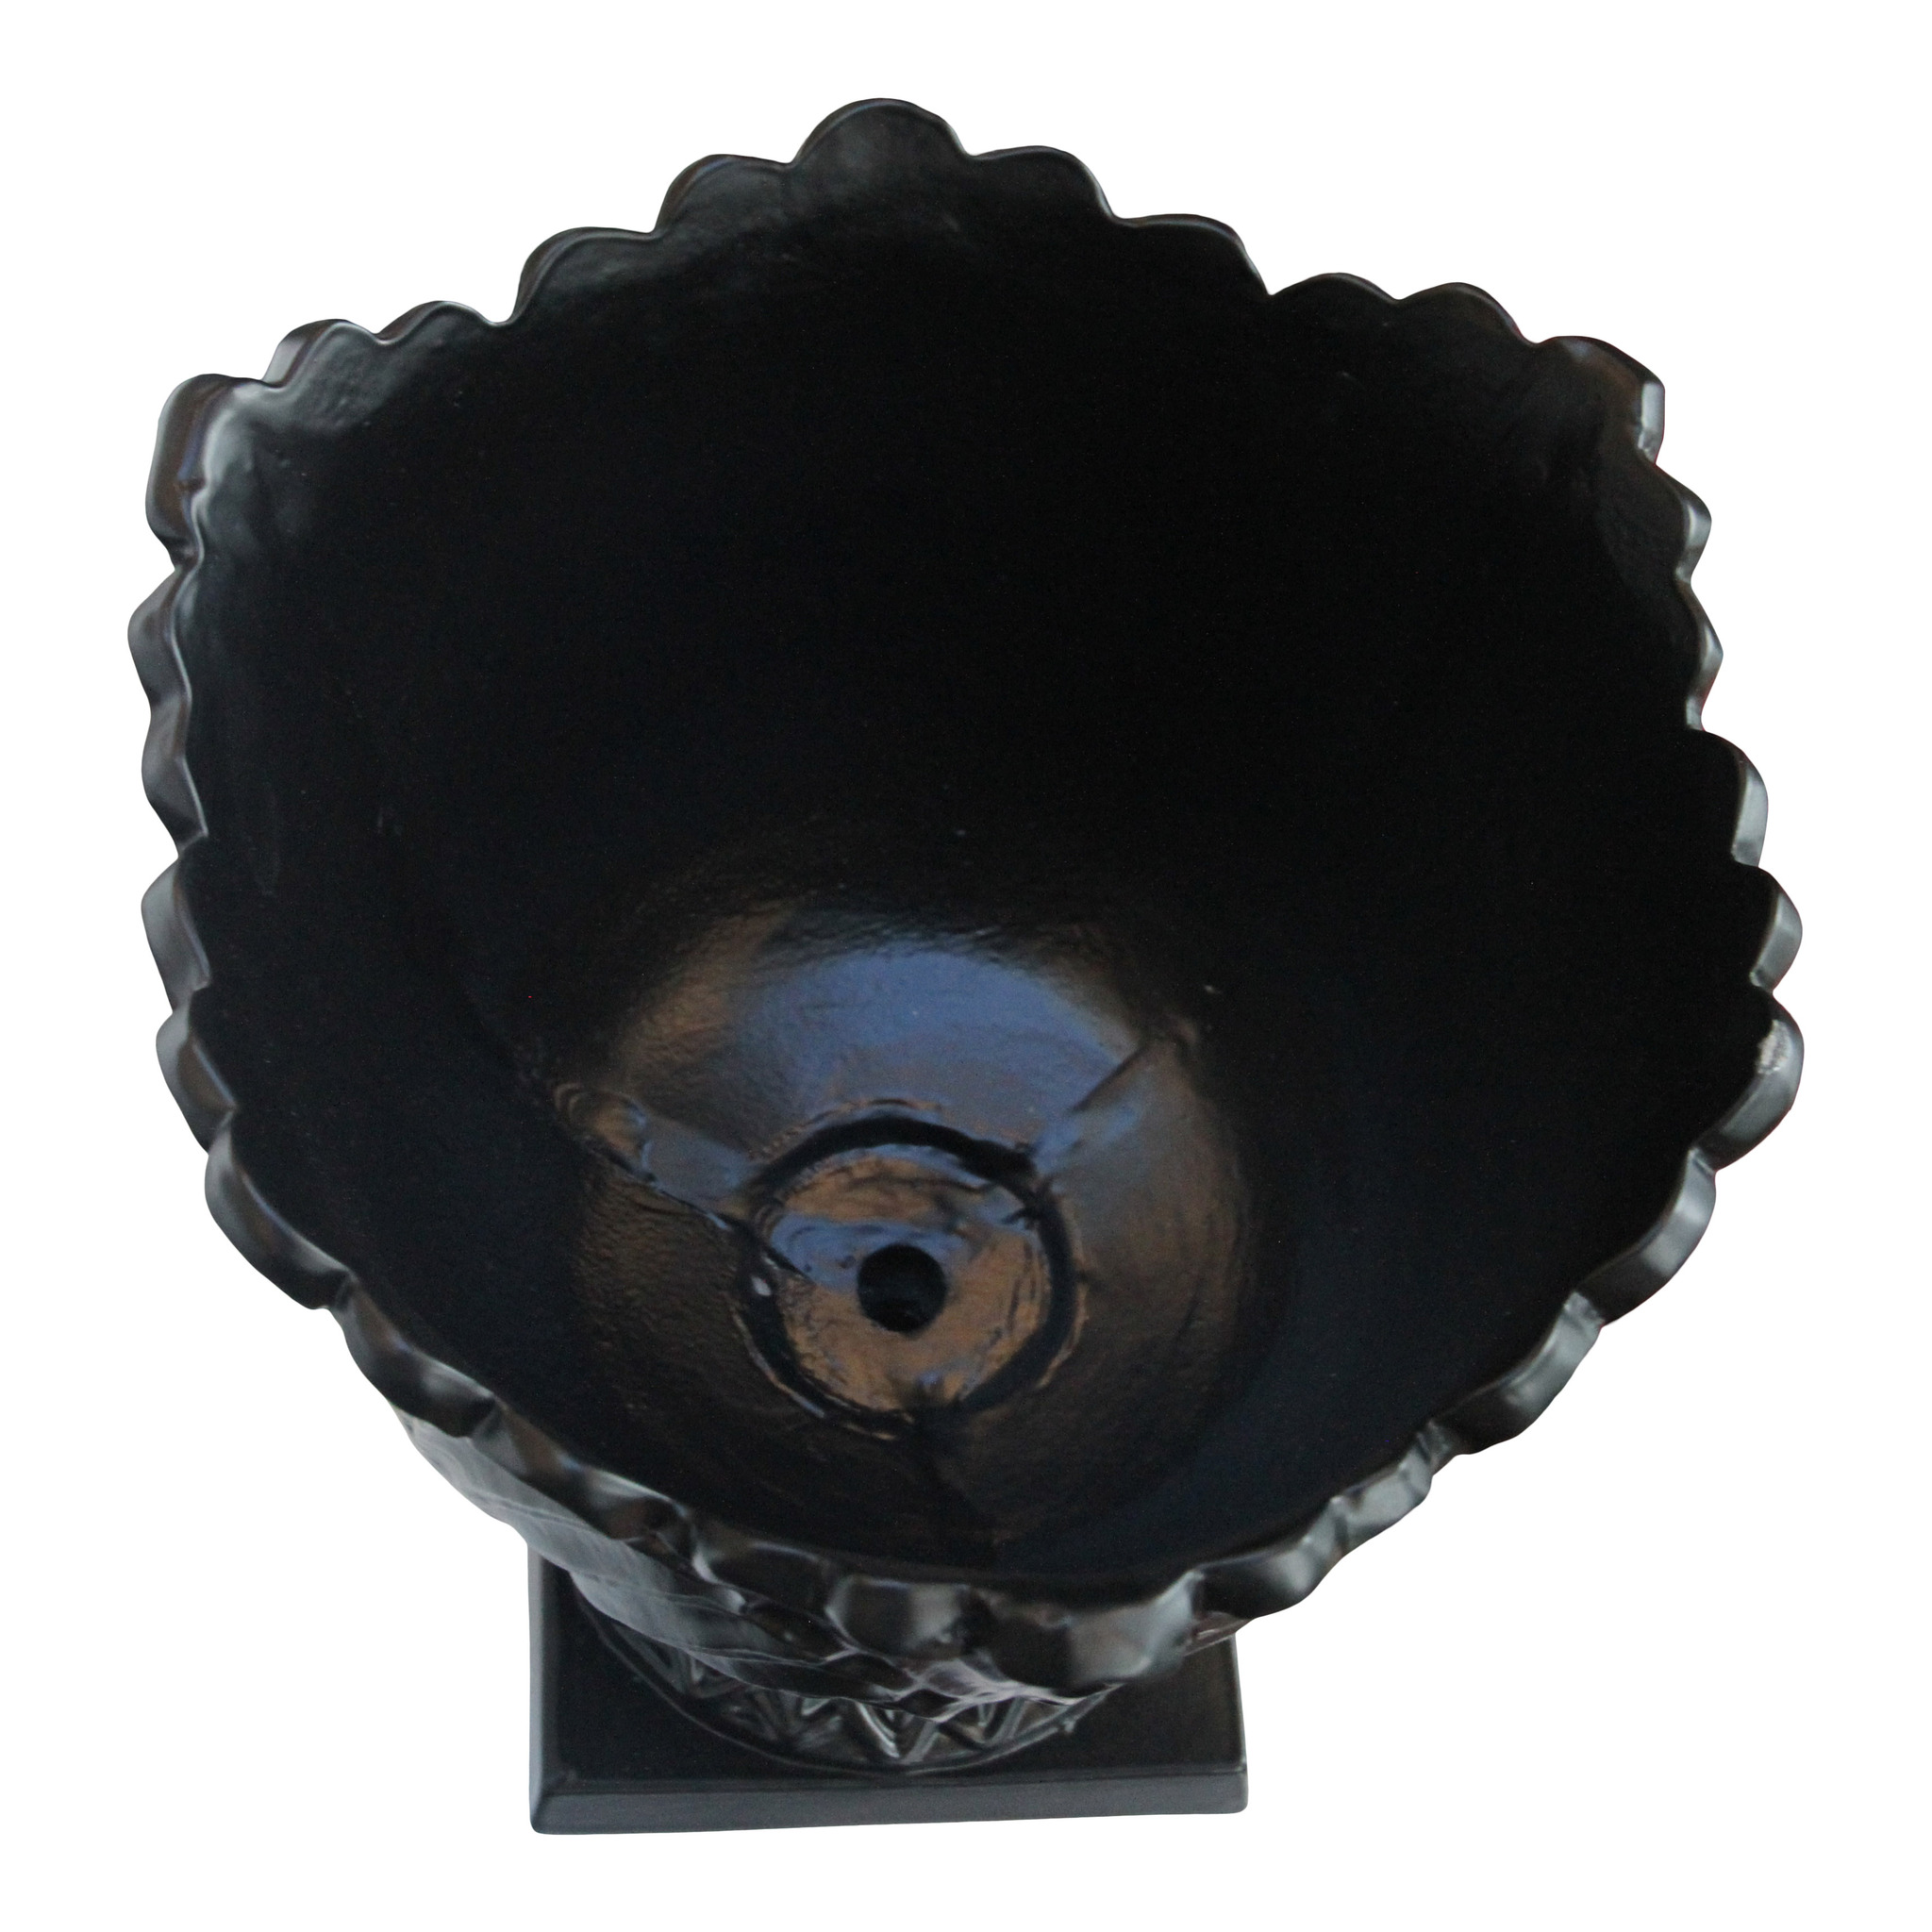 Stor kruka i aluminum, svart, höjd 41 cm och diameter 39 cm, från Mr Fredrik